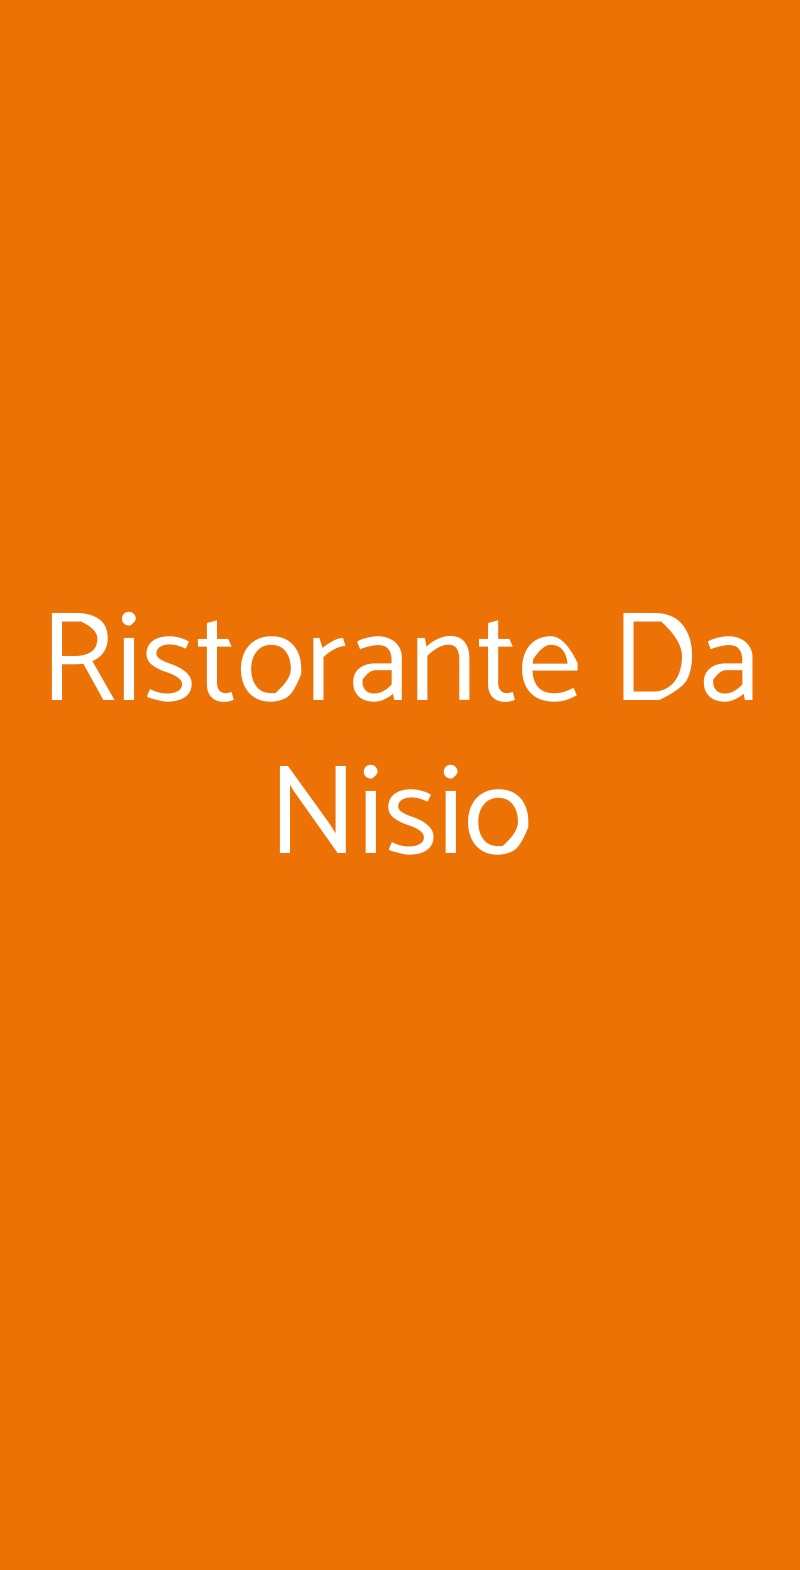 Ristorante Da Nisio San Gimignano menù 1 pagina